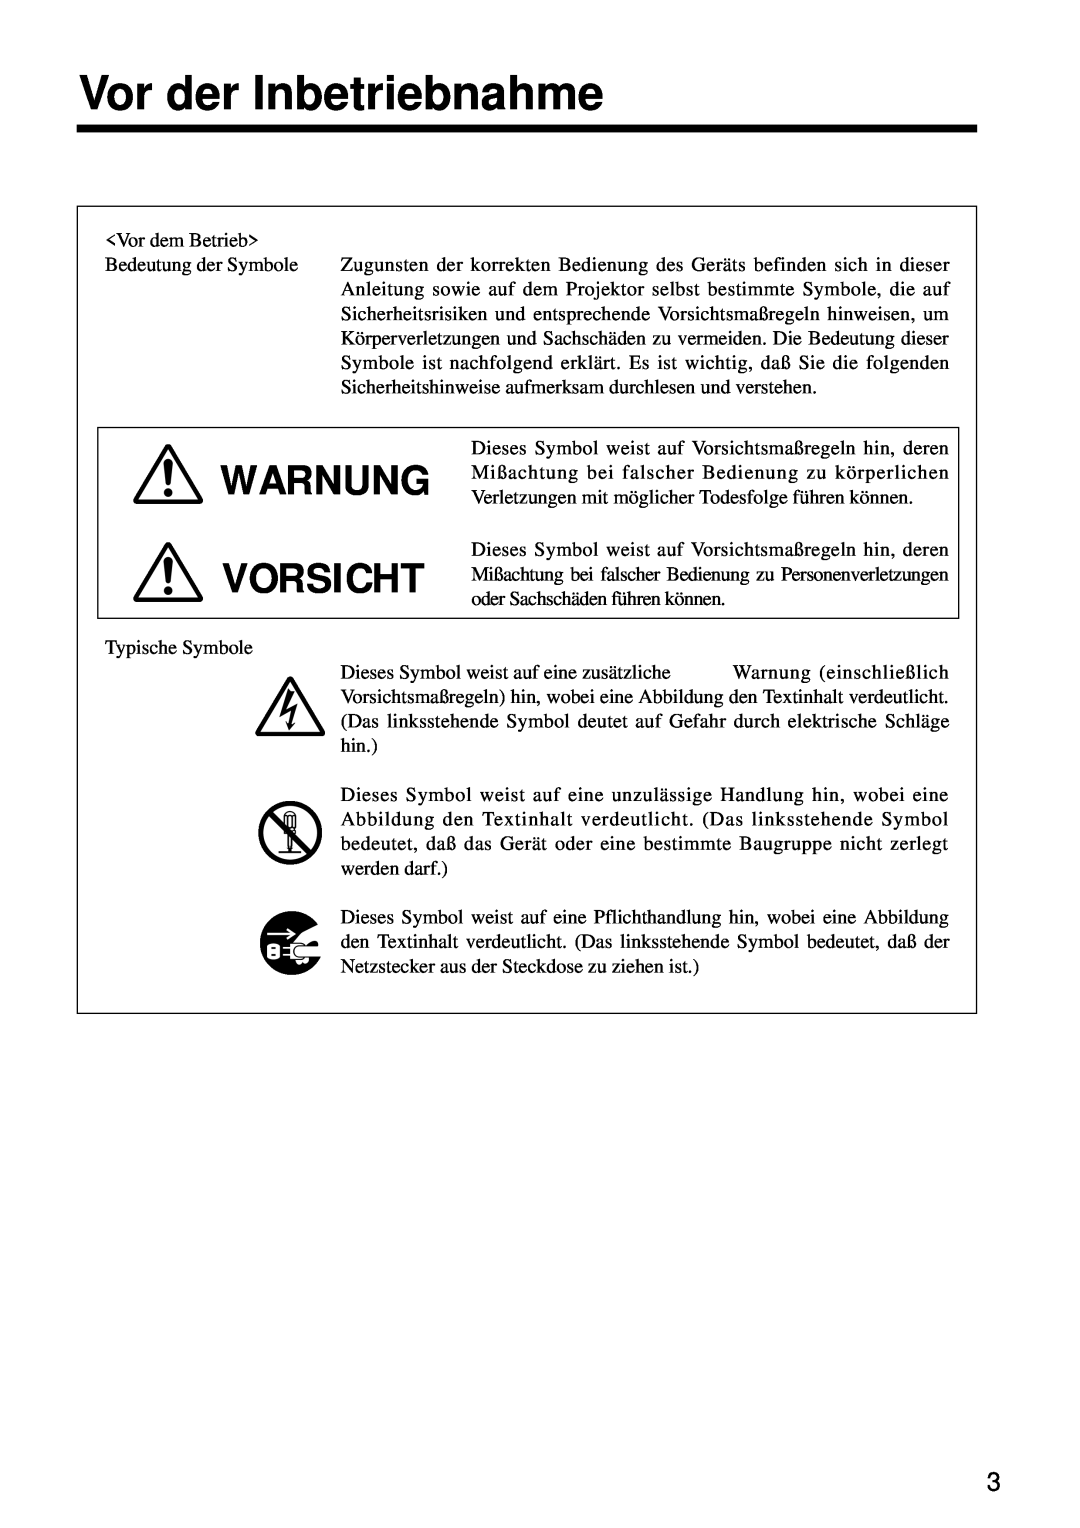 Hitachi CP-S860W user manual Vor der Inbetriebnahme, Warnung Vorsicht 